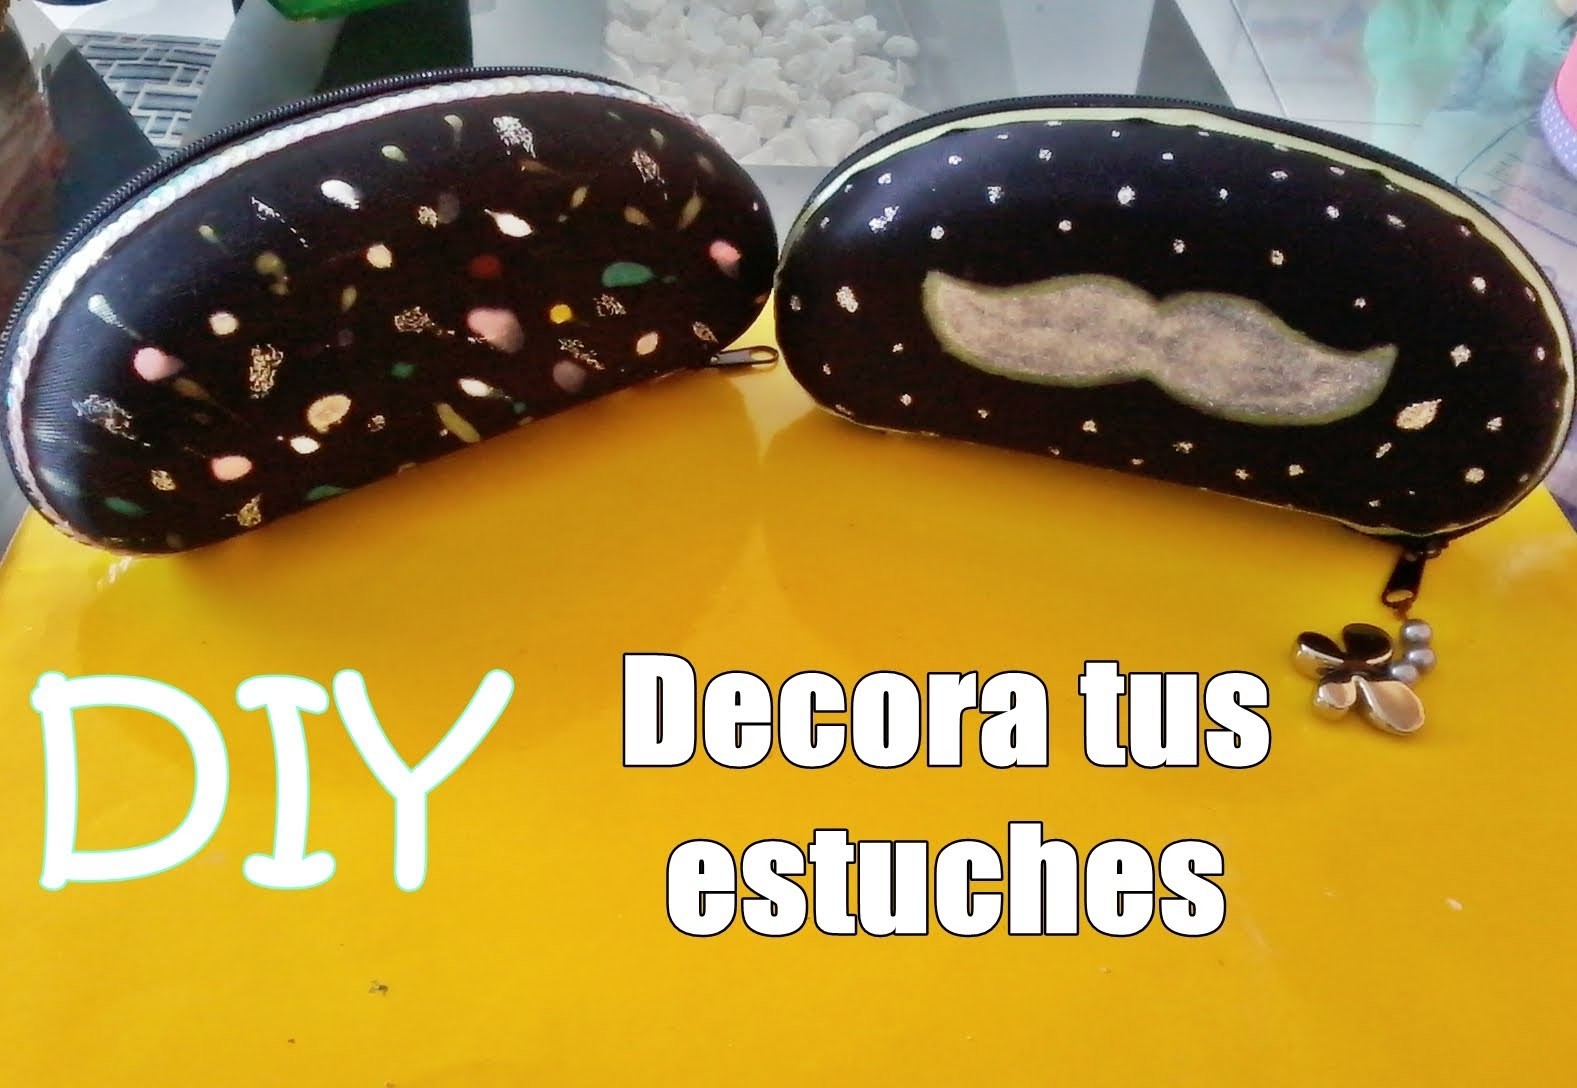 DIY Decora tus estuches de gafas by katt ♥